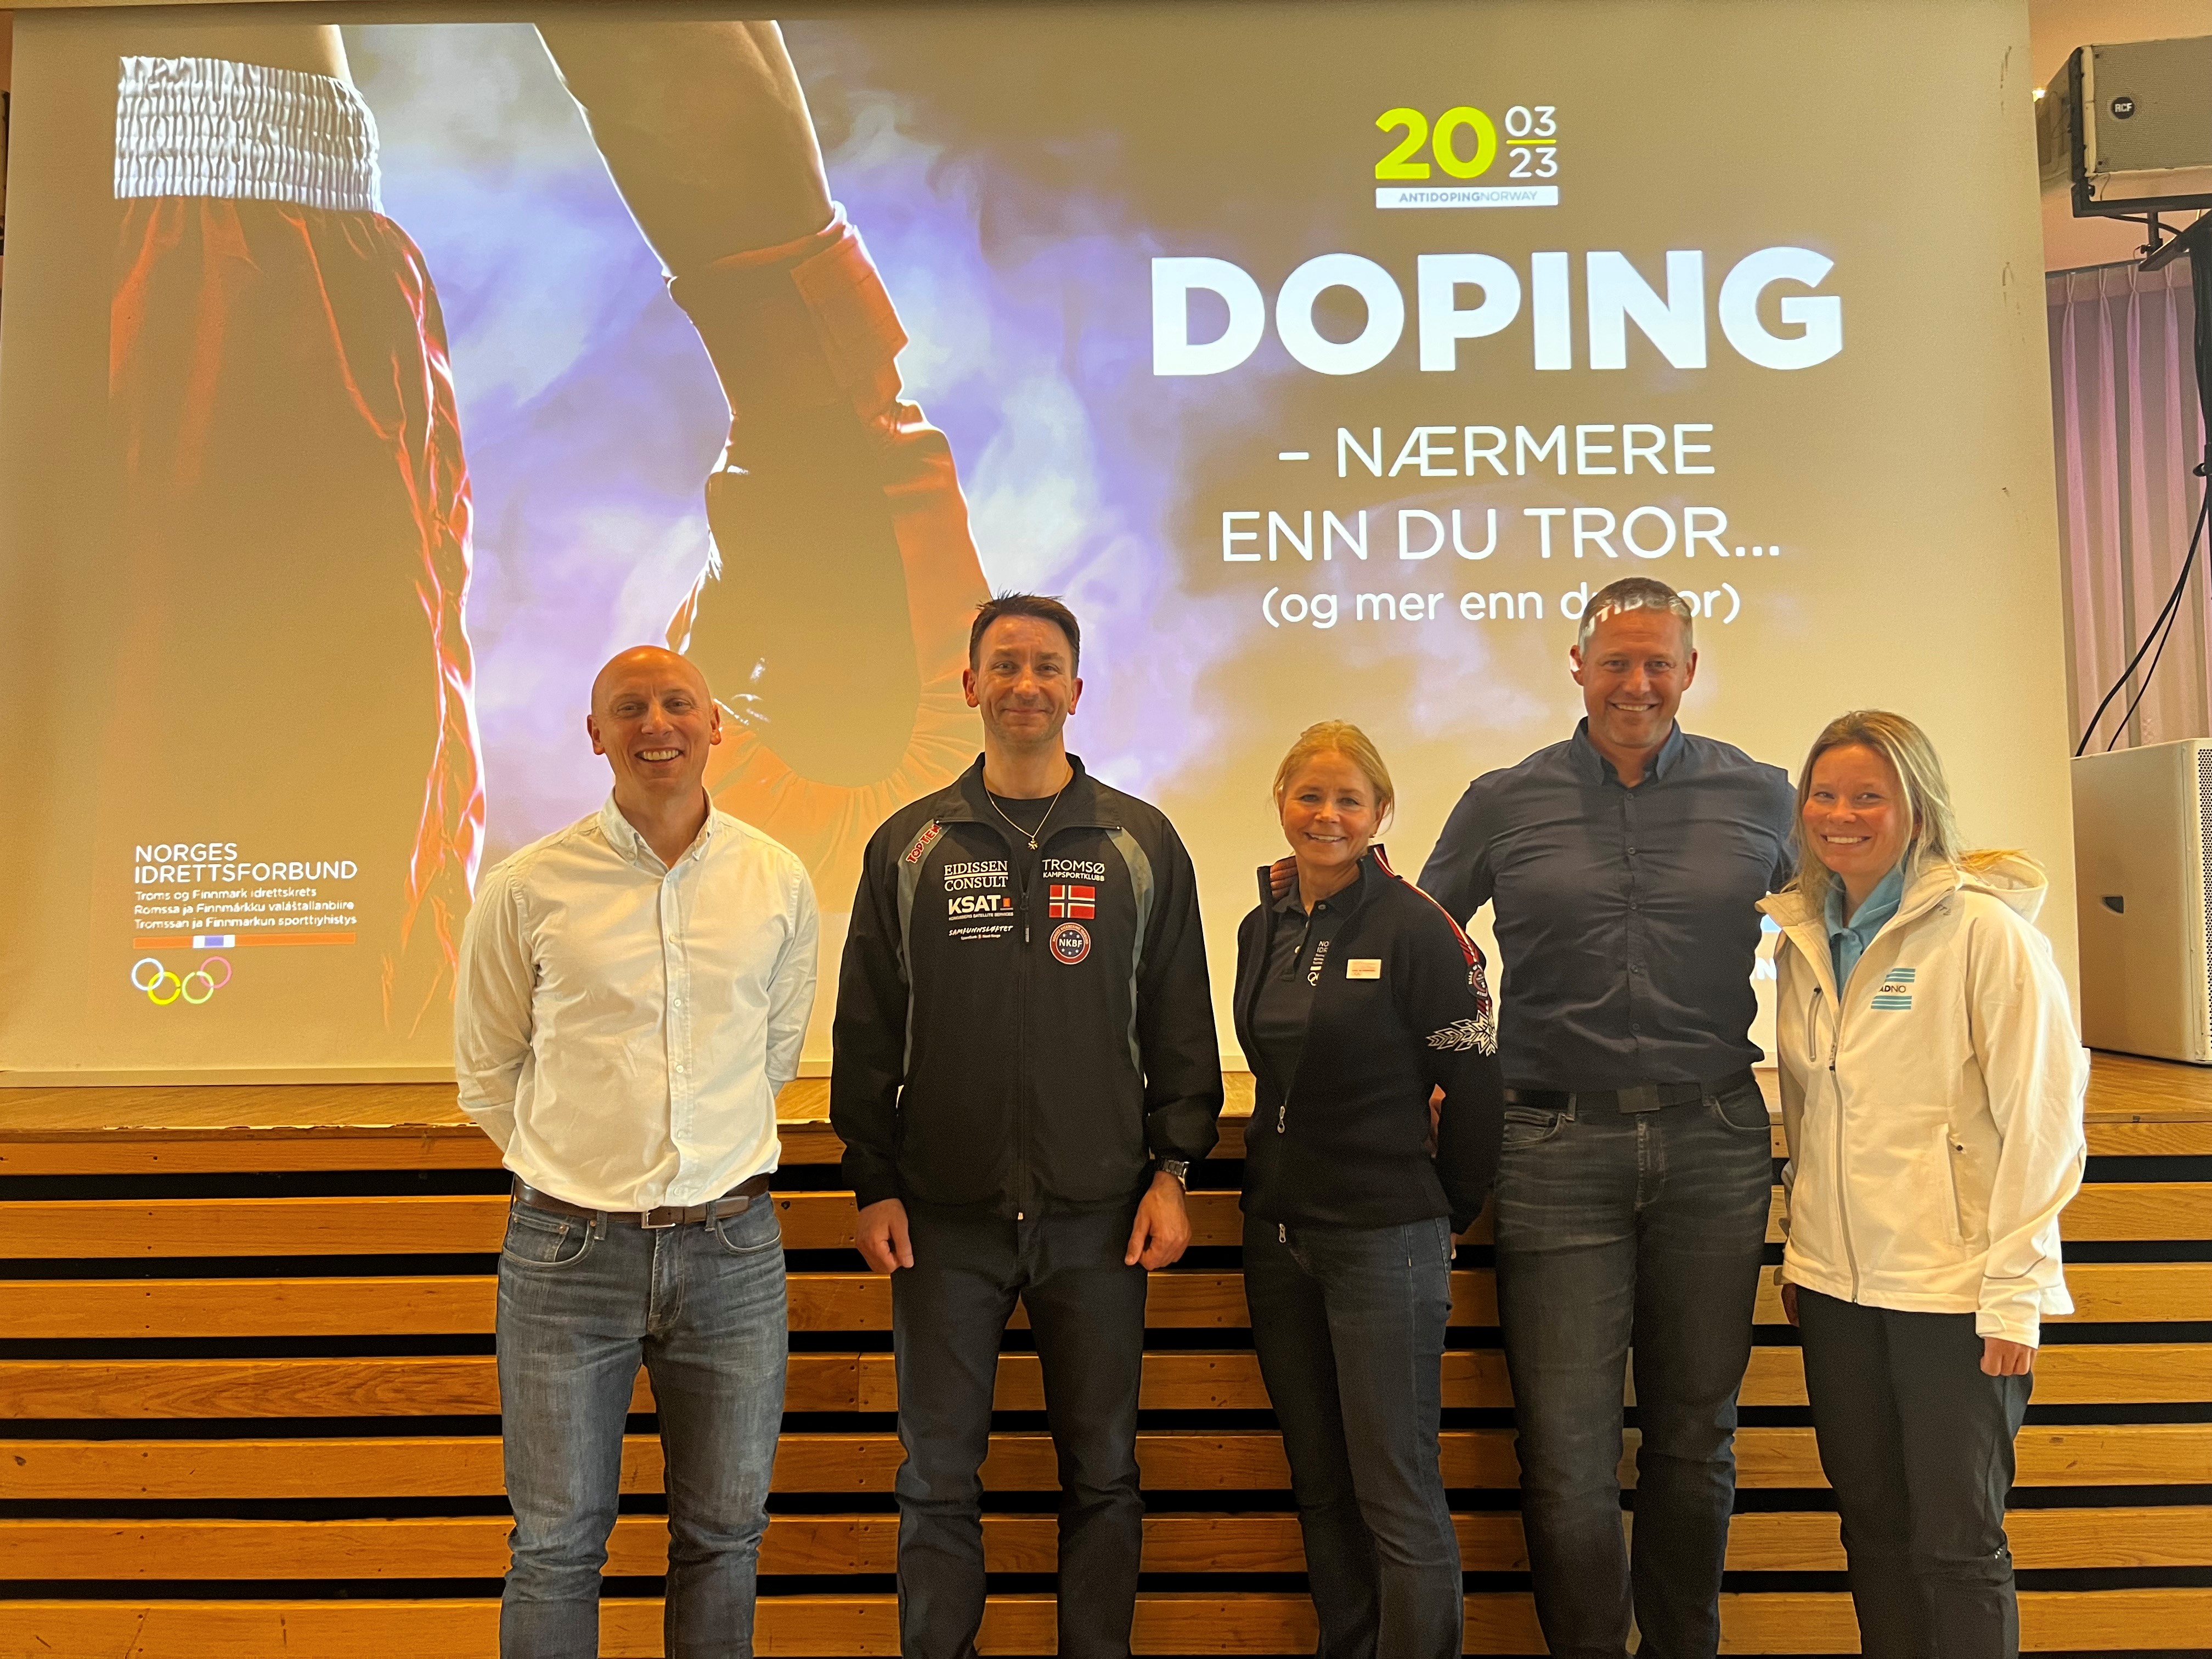 Vellykket seminar i Tromsø - Doping: nærmere enn du tror